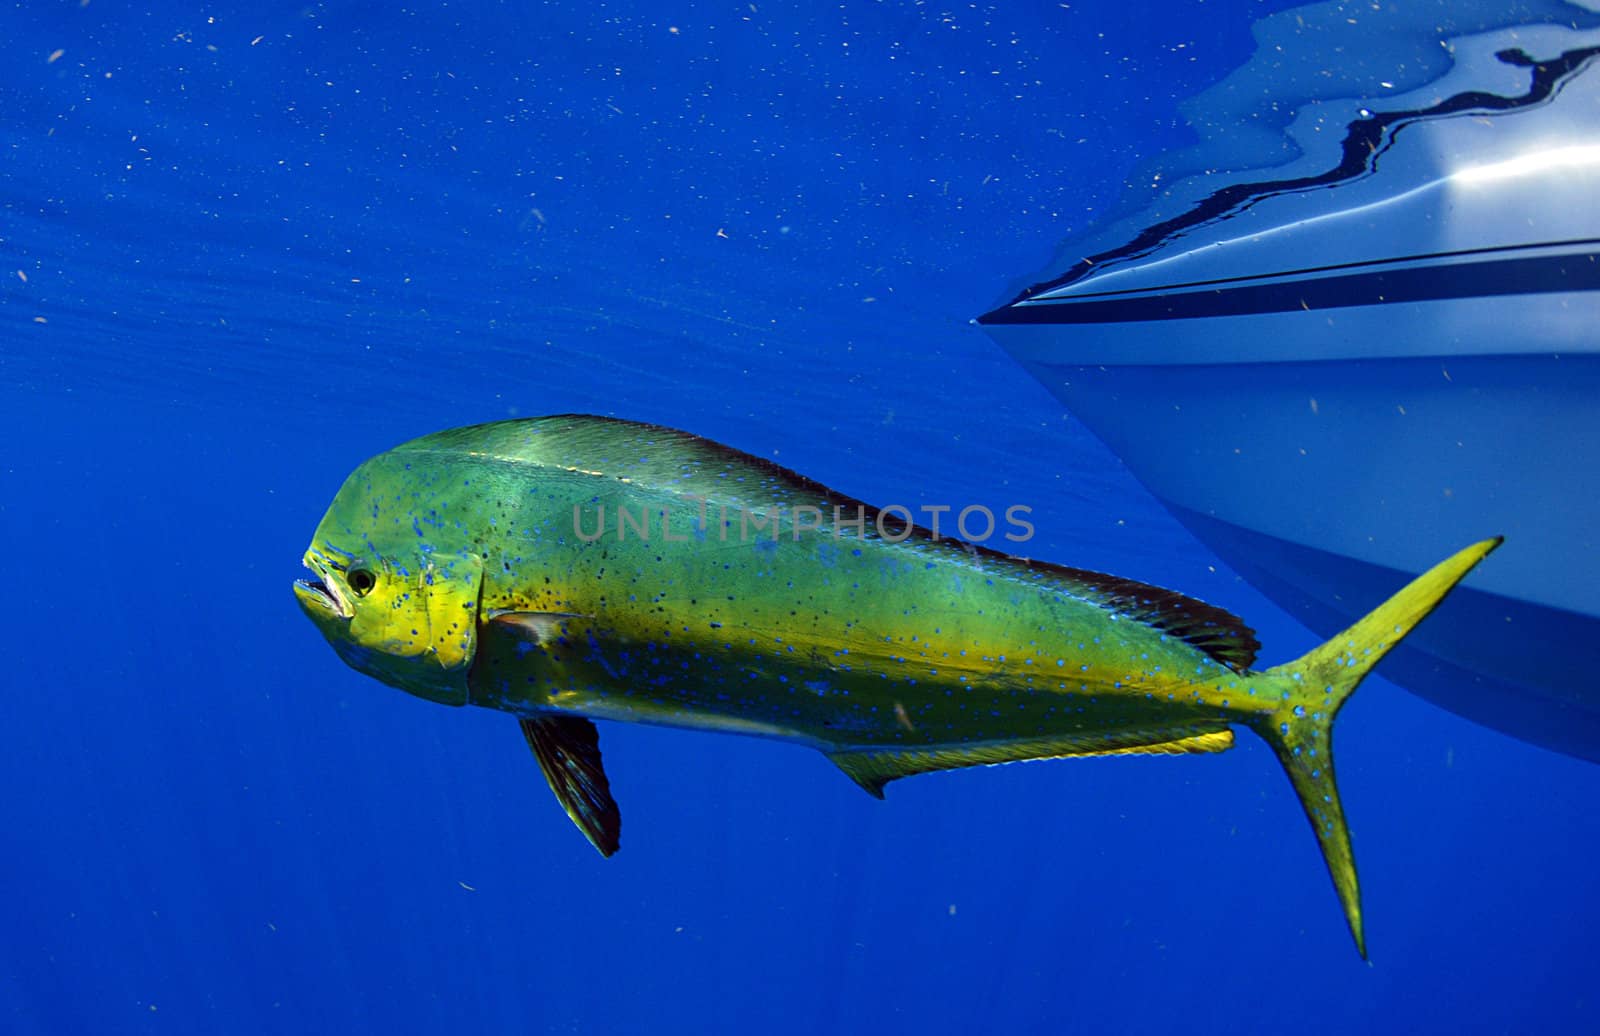 mahi mahi or dolphin fish by ftlaudgirl